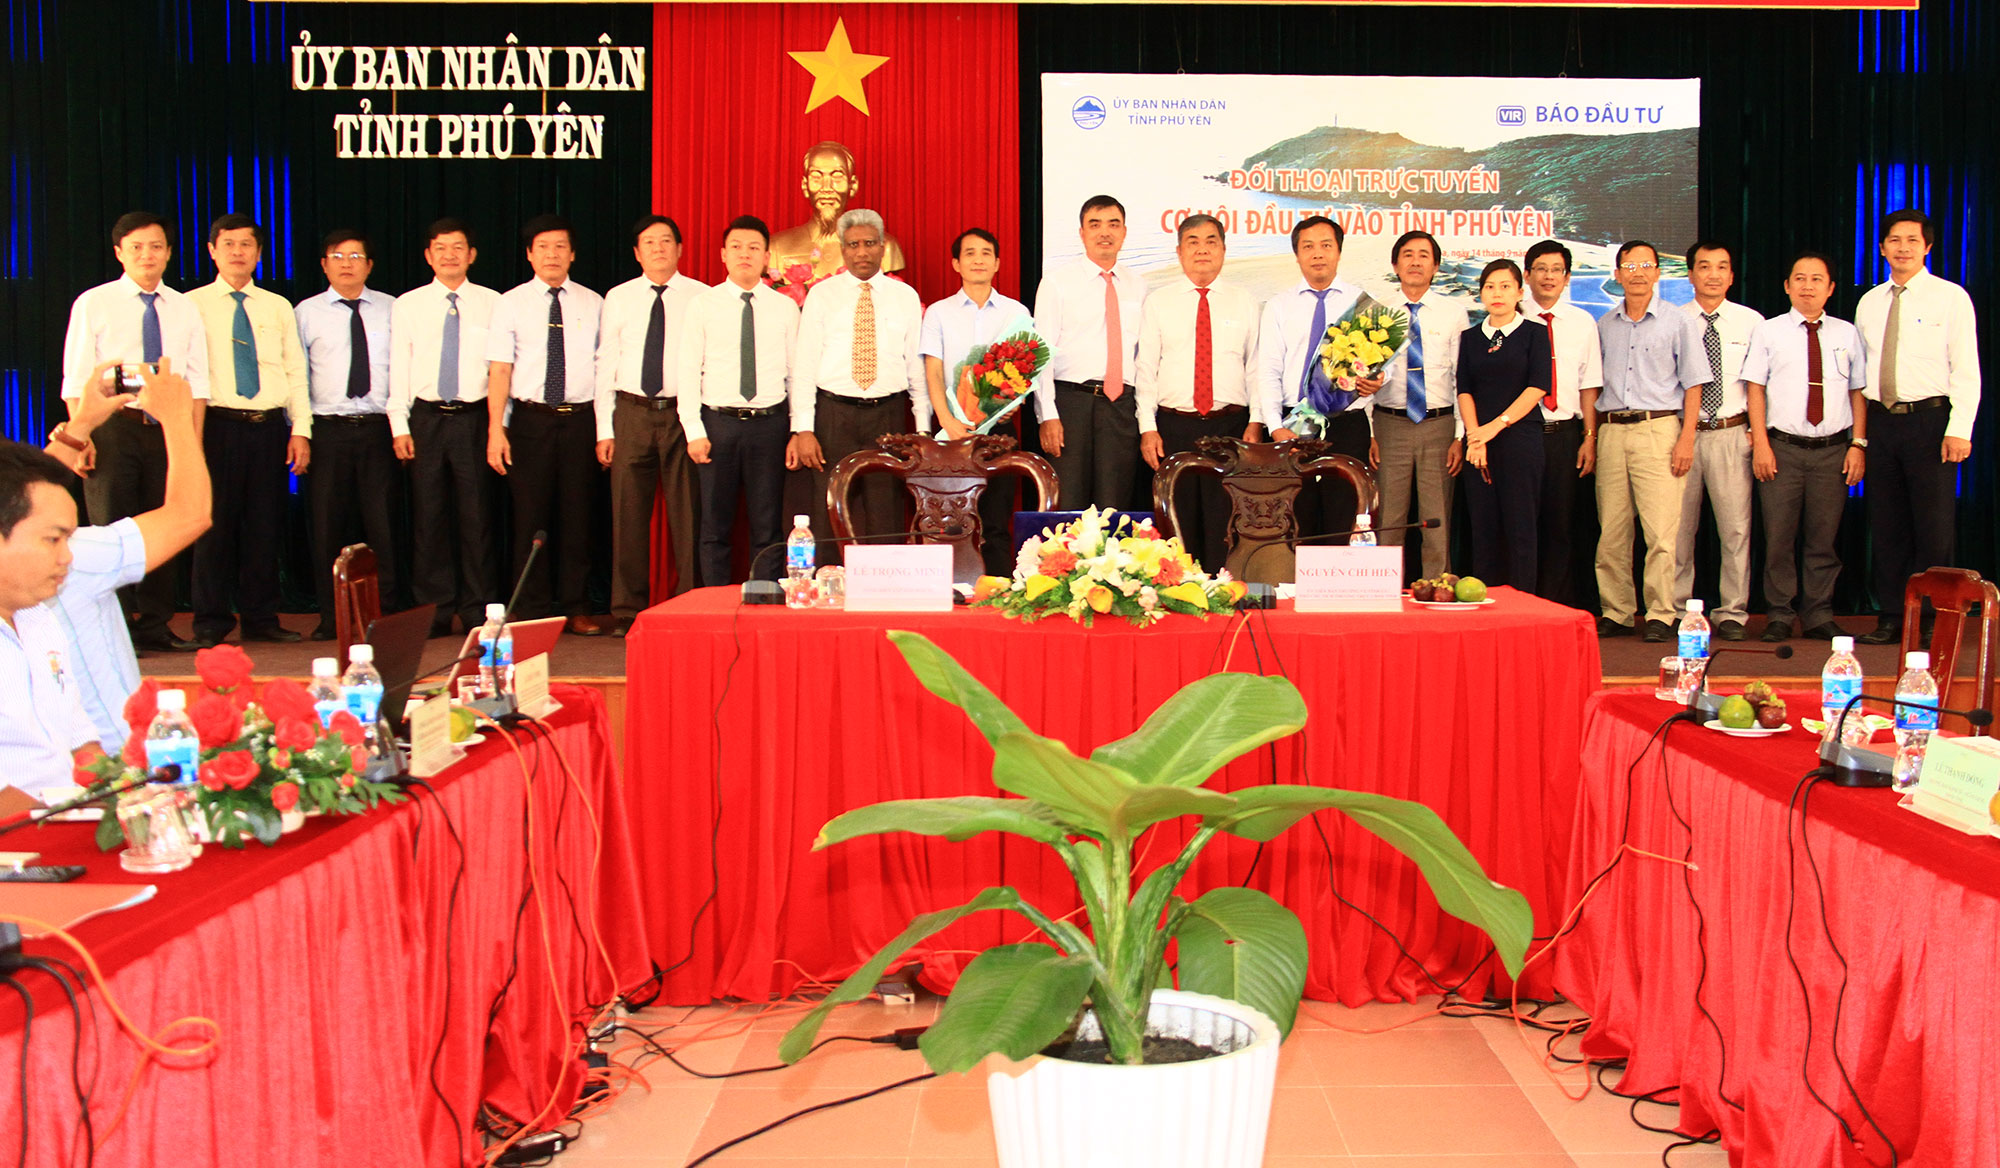 Giao lưu trực tuyến với lãnh đạo UBND tỉnh Phú Yên: Cơ hội đầu tư vào Phú Yên